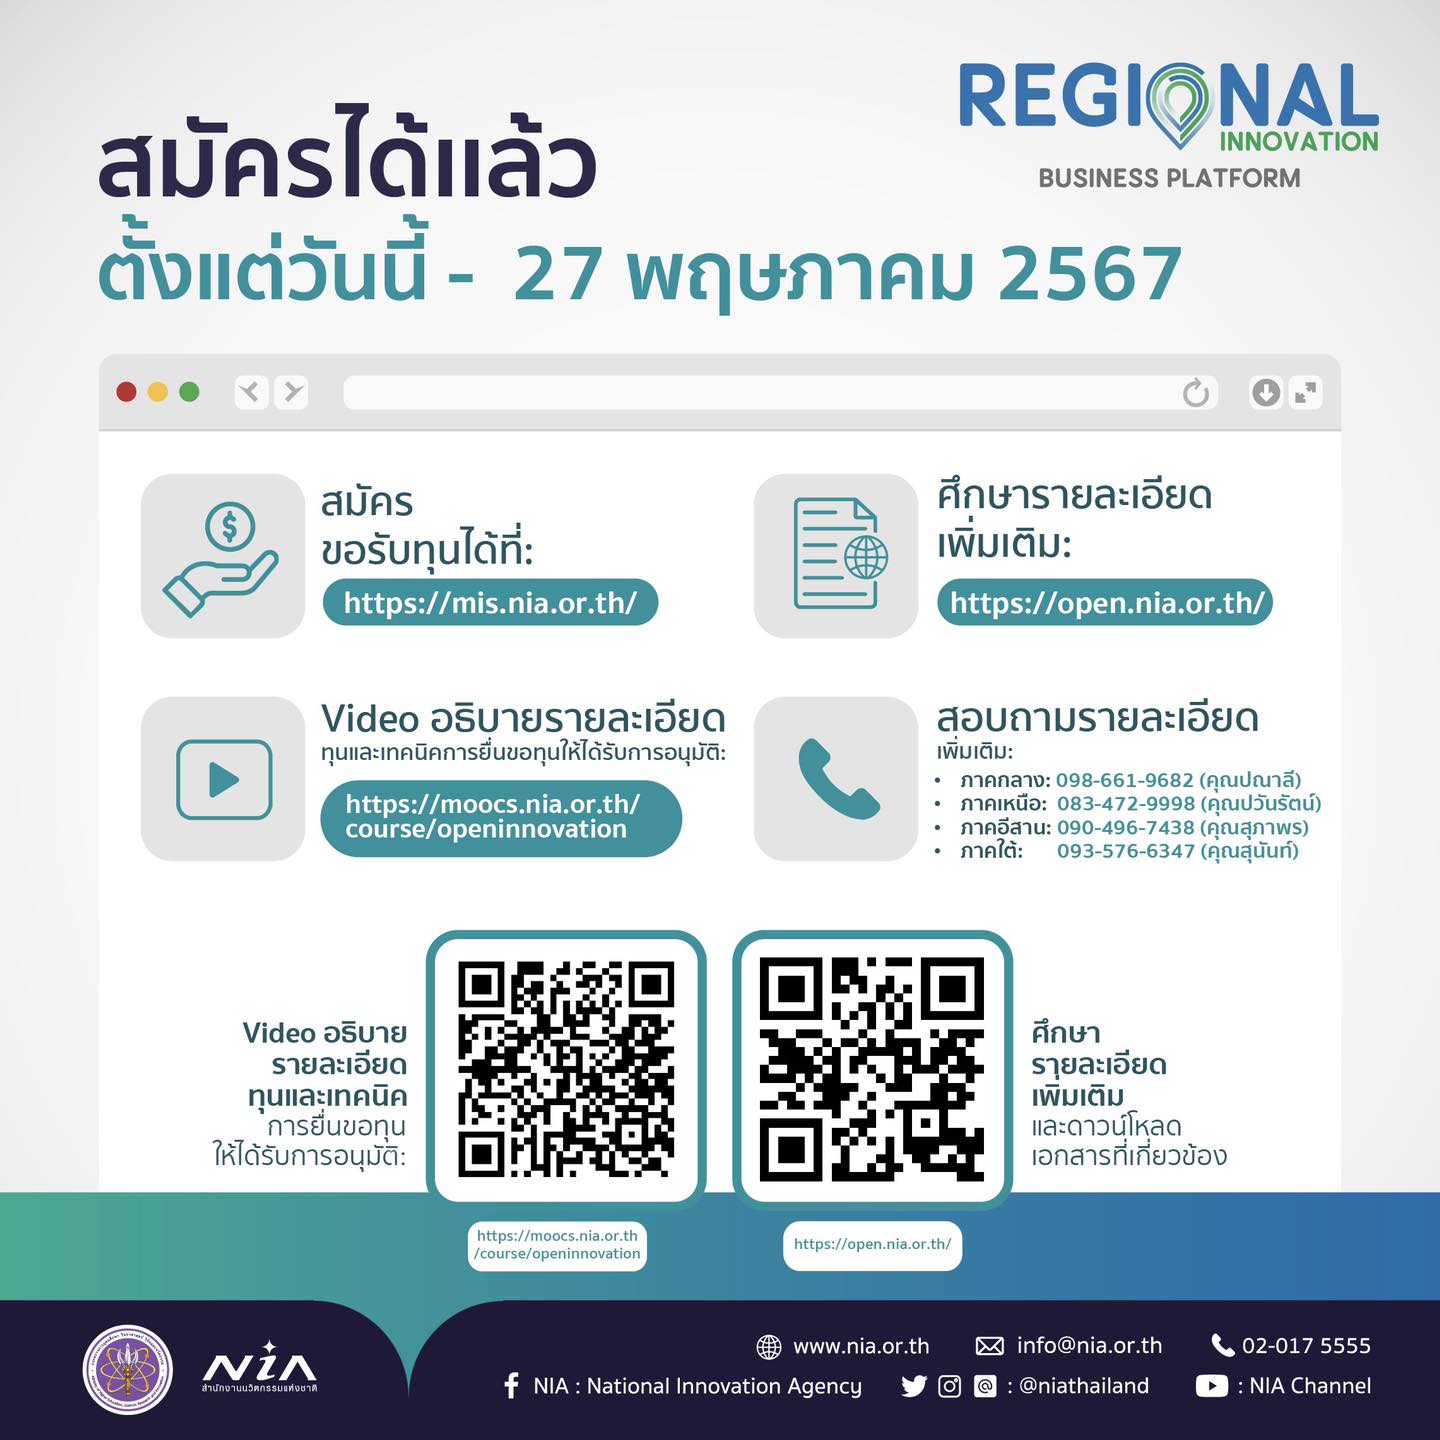 Regional Innovation Business Platform_4.jpg